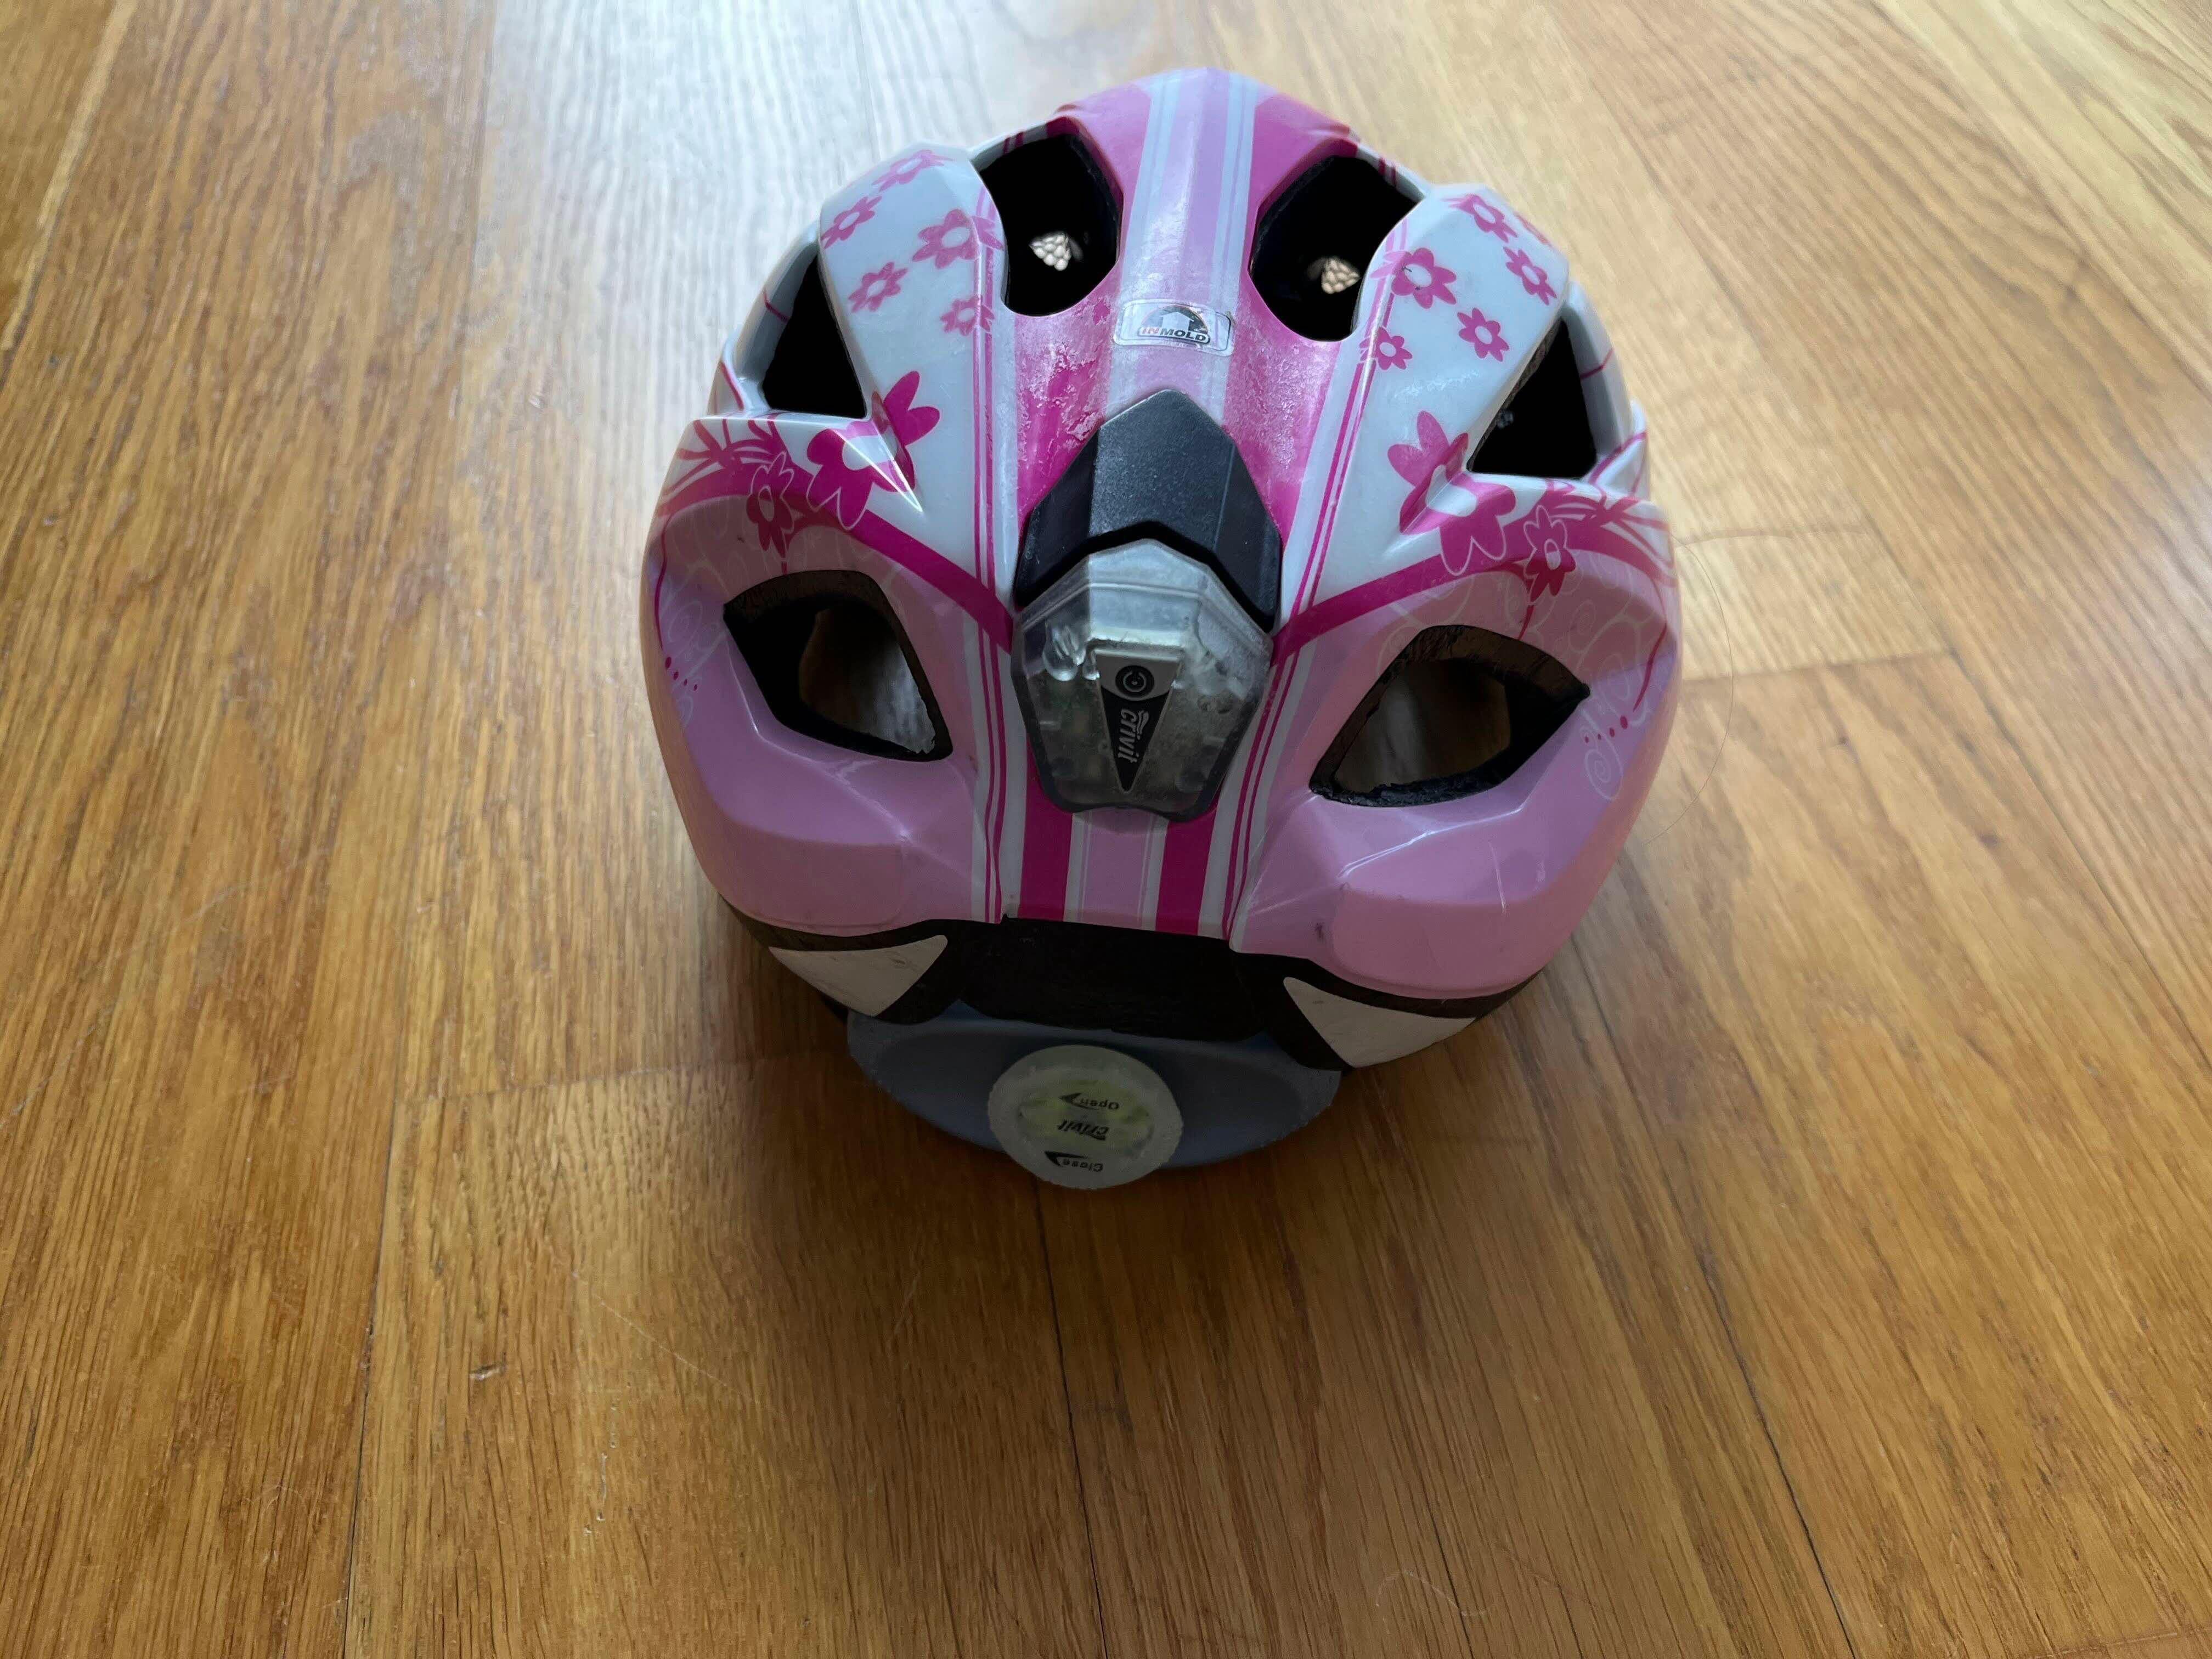 Kask rowerowy dla dziecka z tylną lampką, 49-54 cm, biało różowy